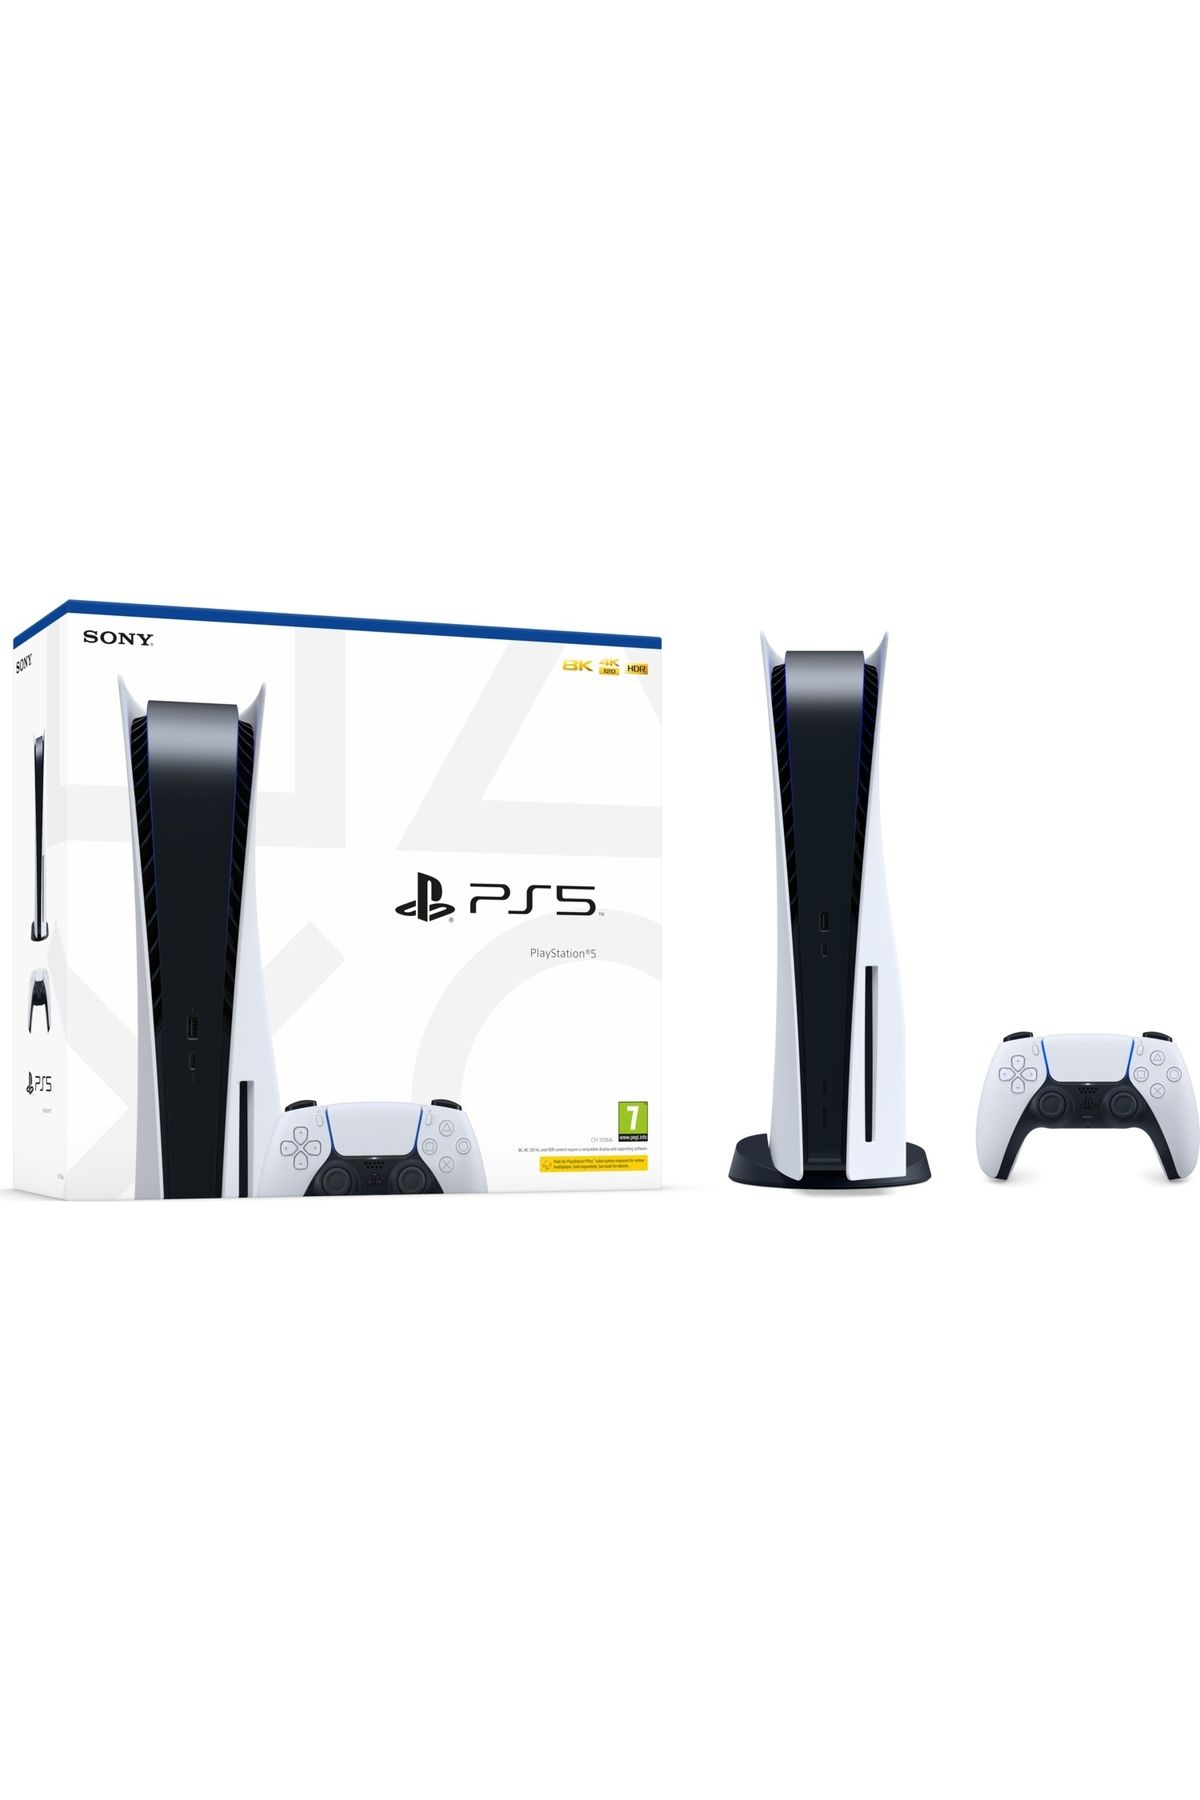 Sony Playstation 5 Standart Edition 825 GB Türkçe Menü (İthalatçı Garantili)